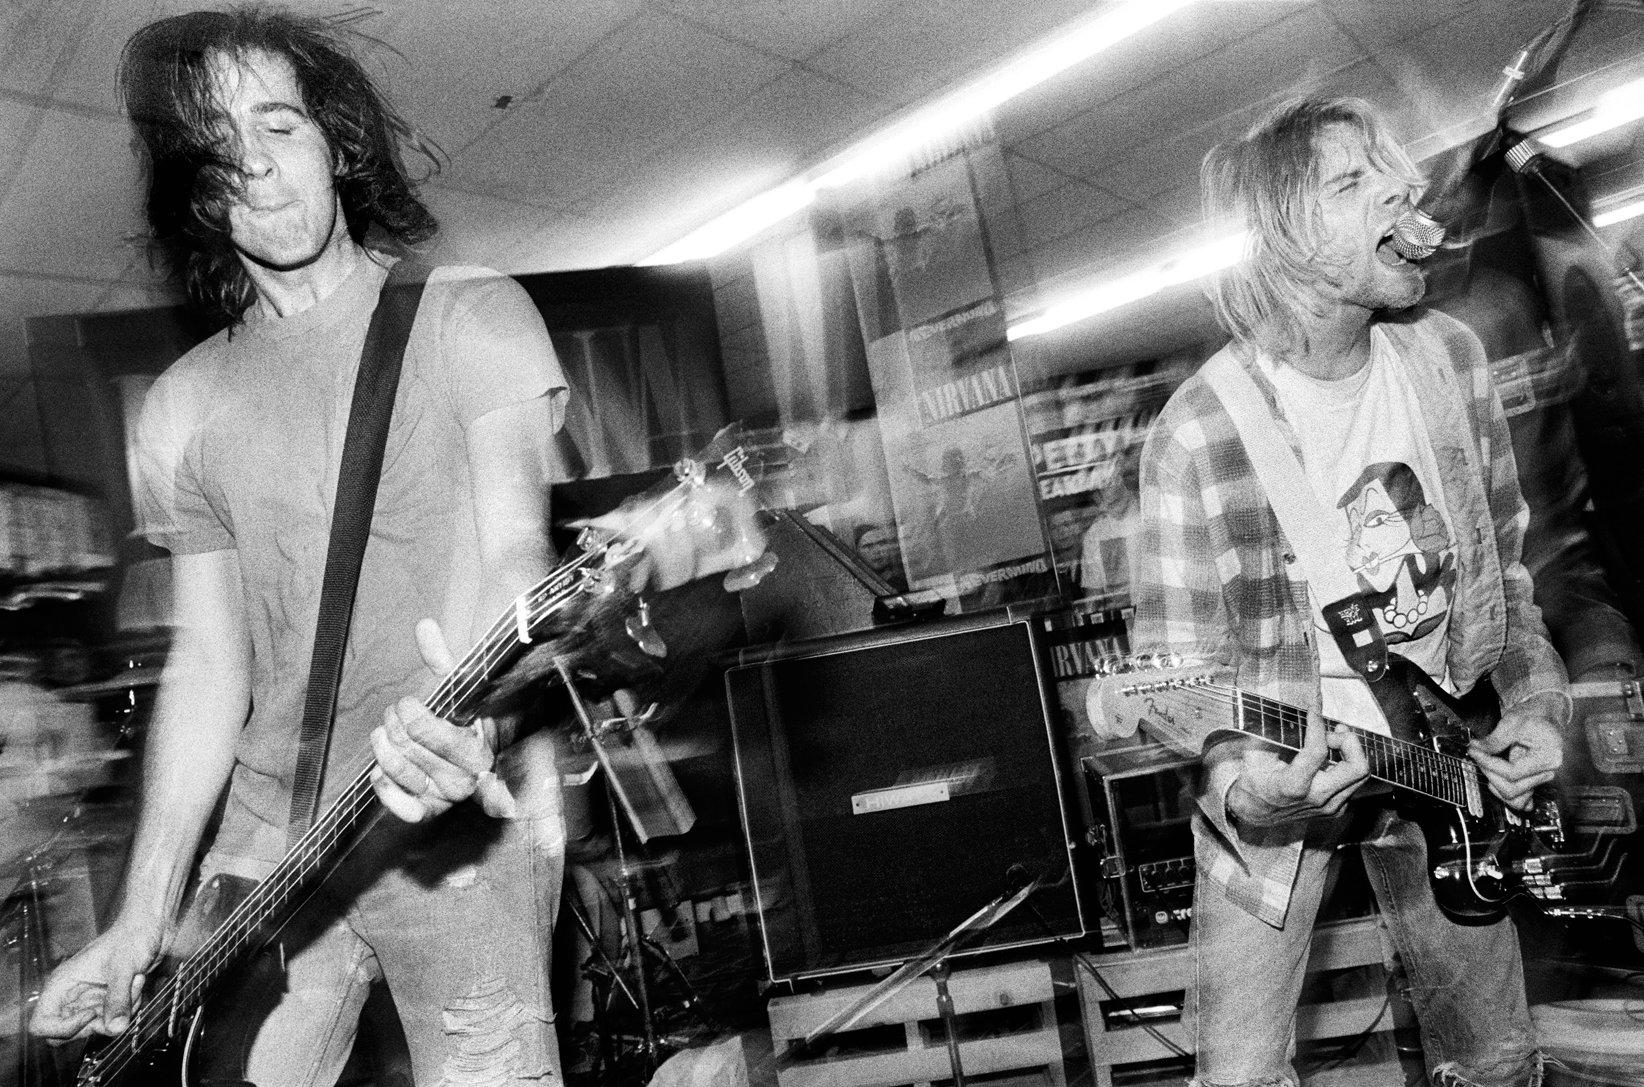 Krist Novoselic and Kurt Cobain in Seattle on September 16, 1991.